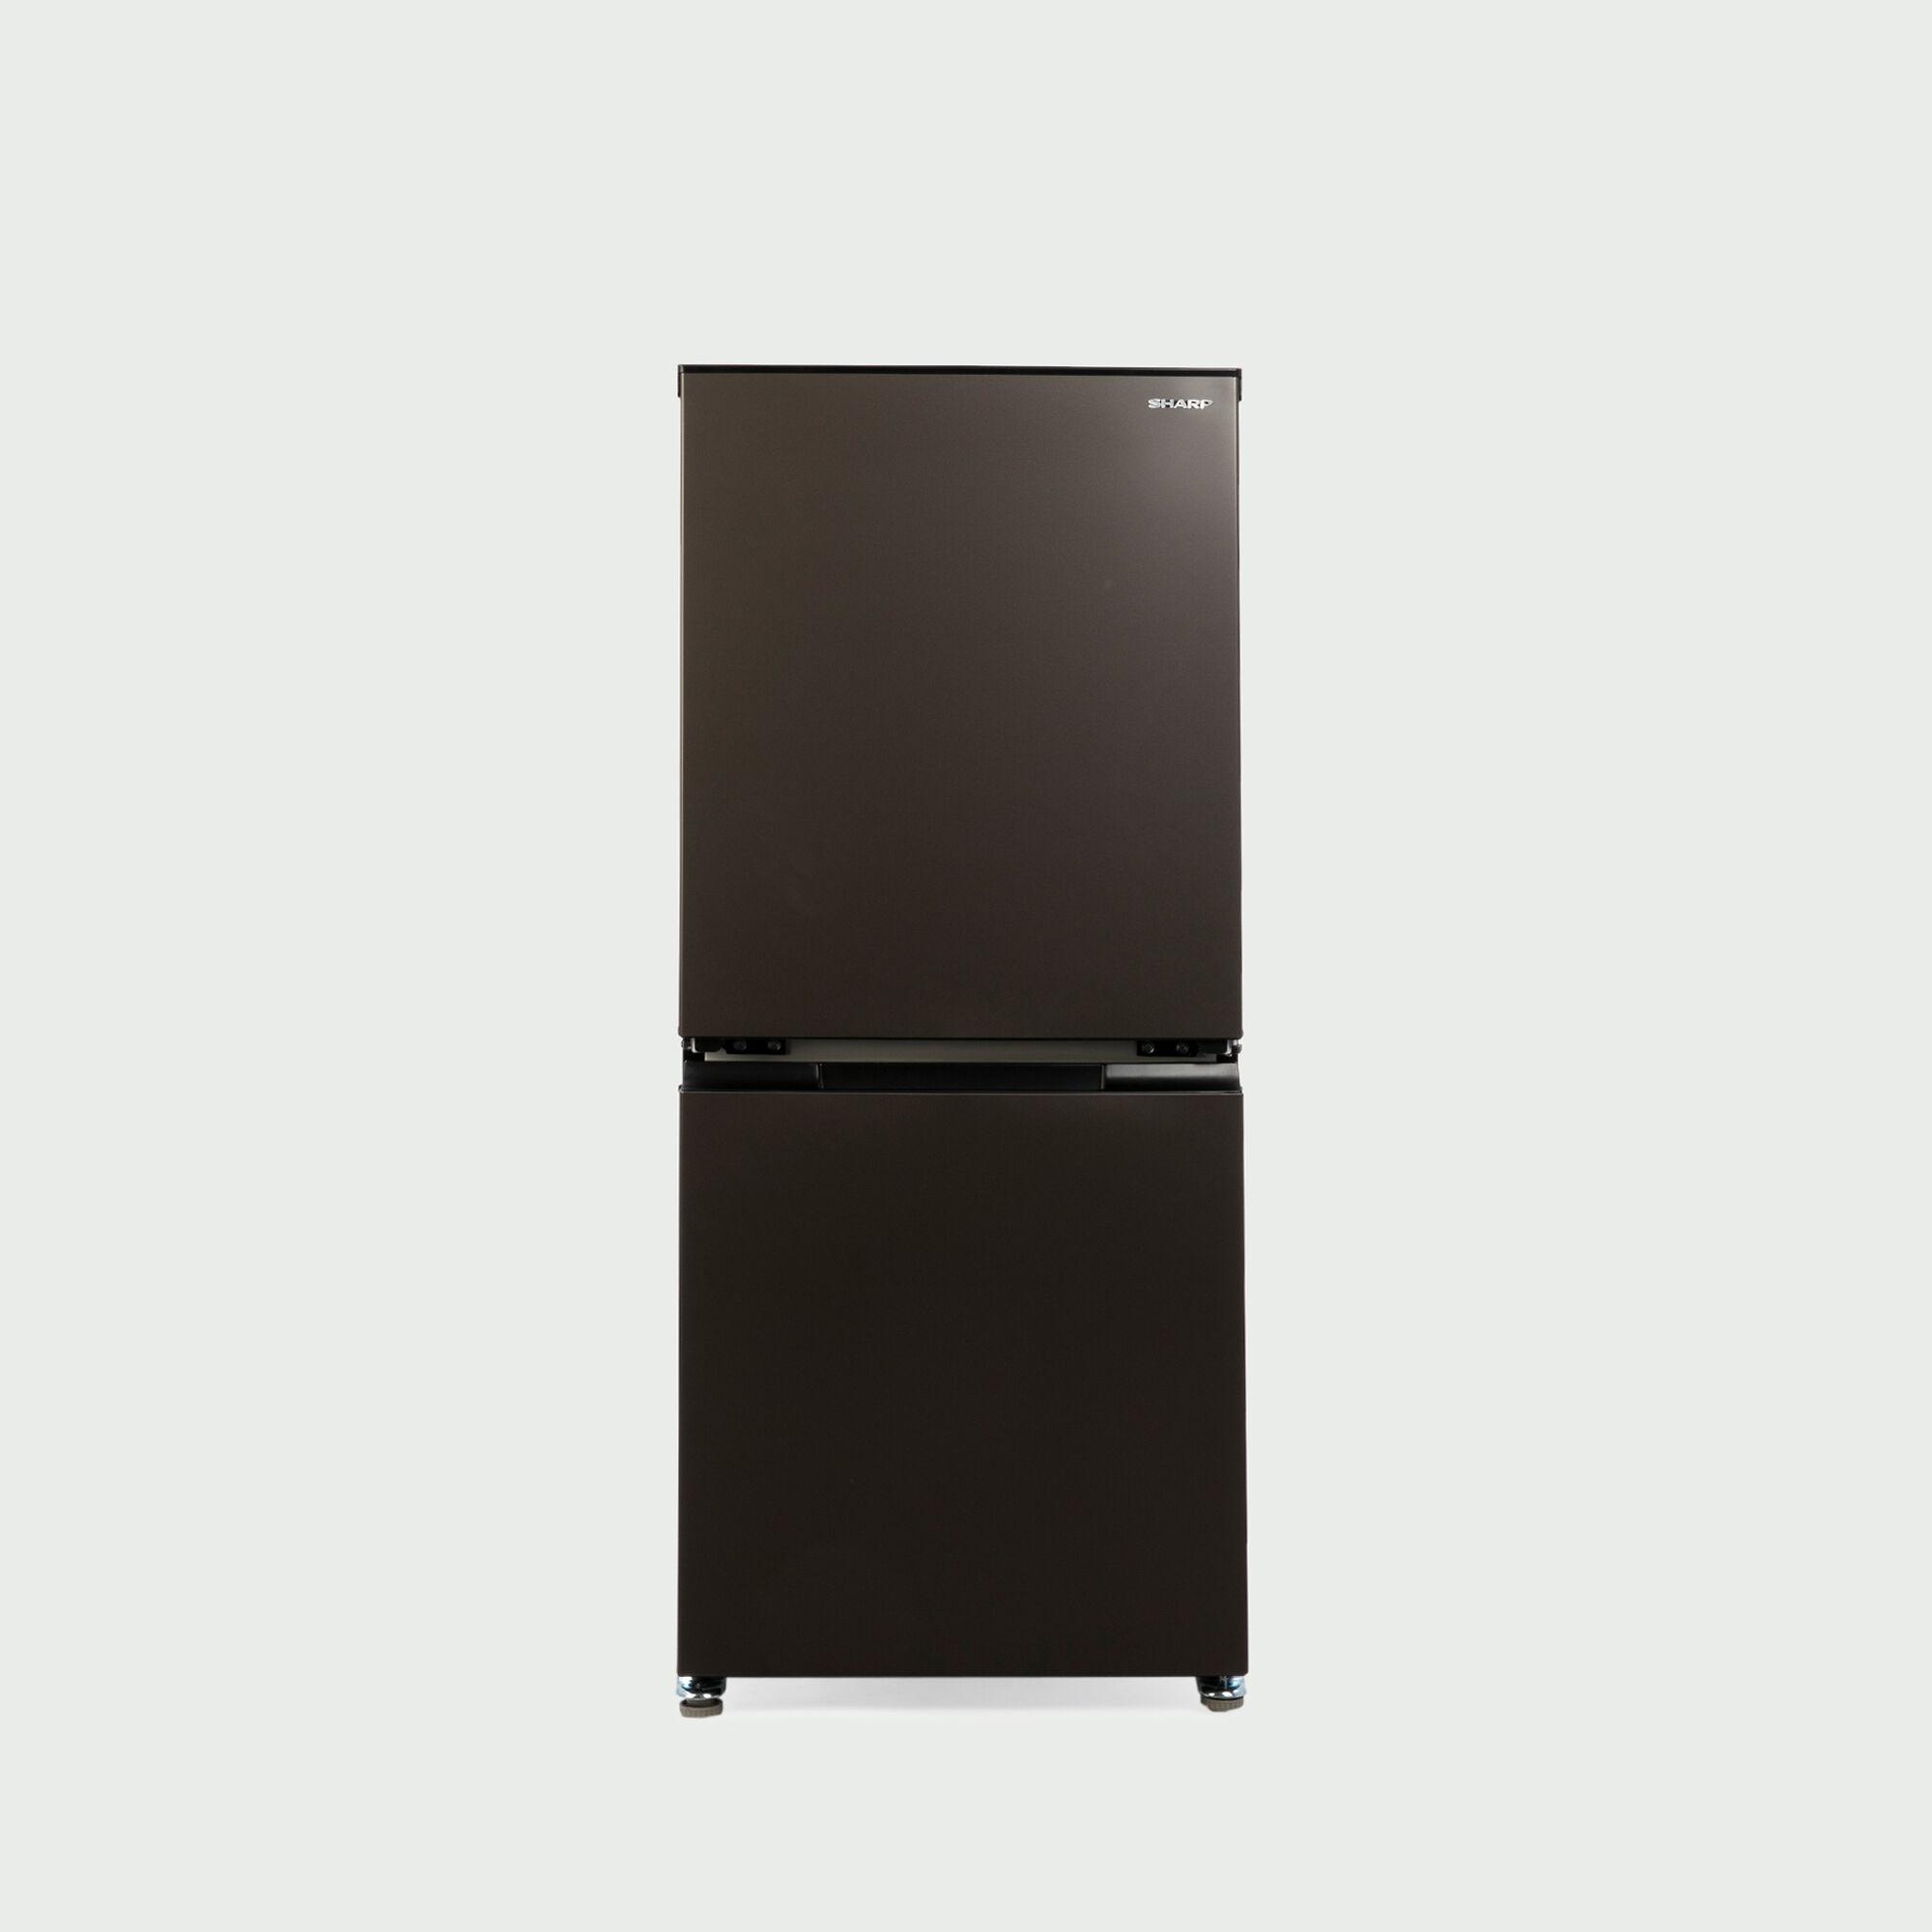 2018年製】SHARP 2ドア冷凍冷蔵庫 - 冷蔵庫